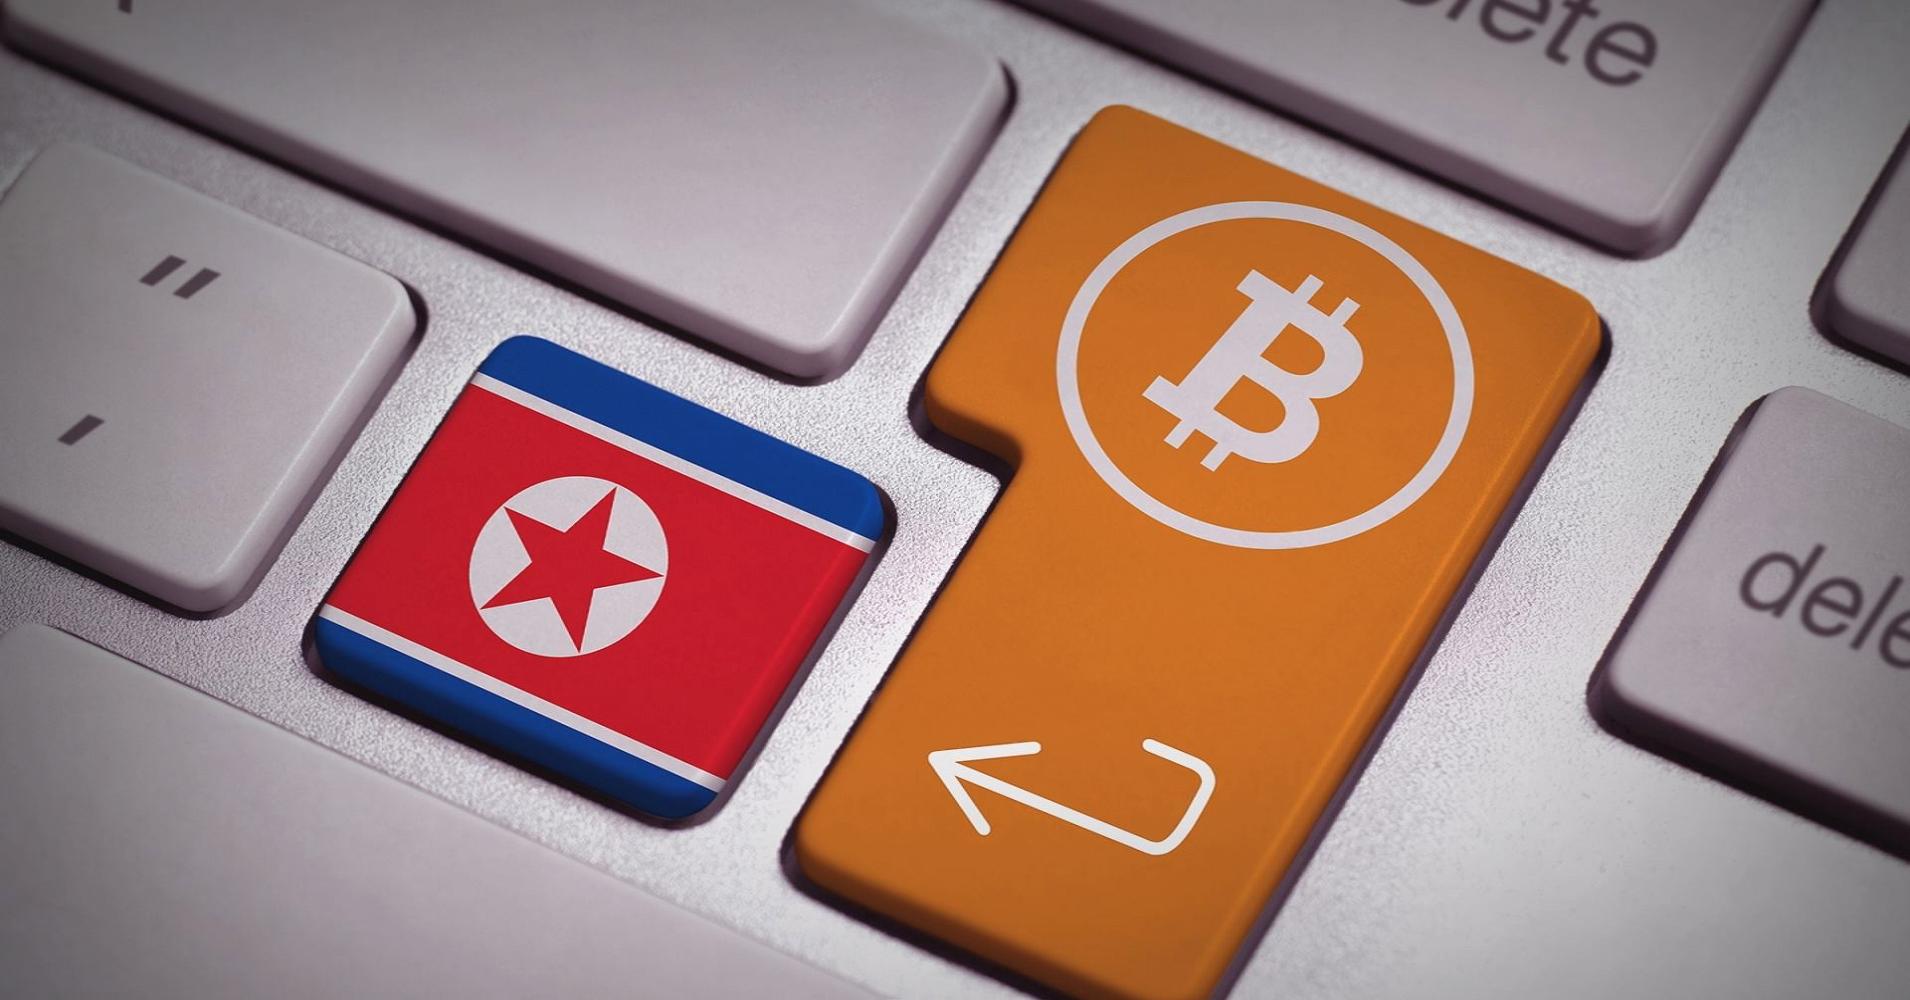 Северна Корея за прехвърлили над $600 милиона в криптовалути от кибер кражби